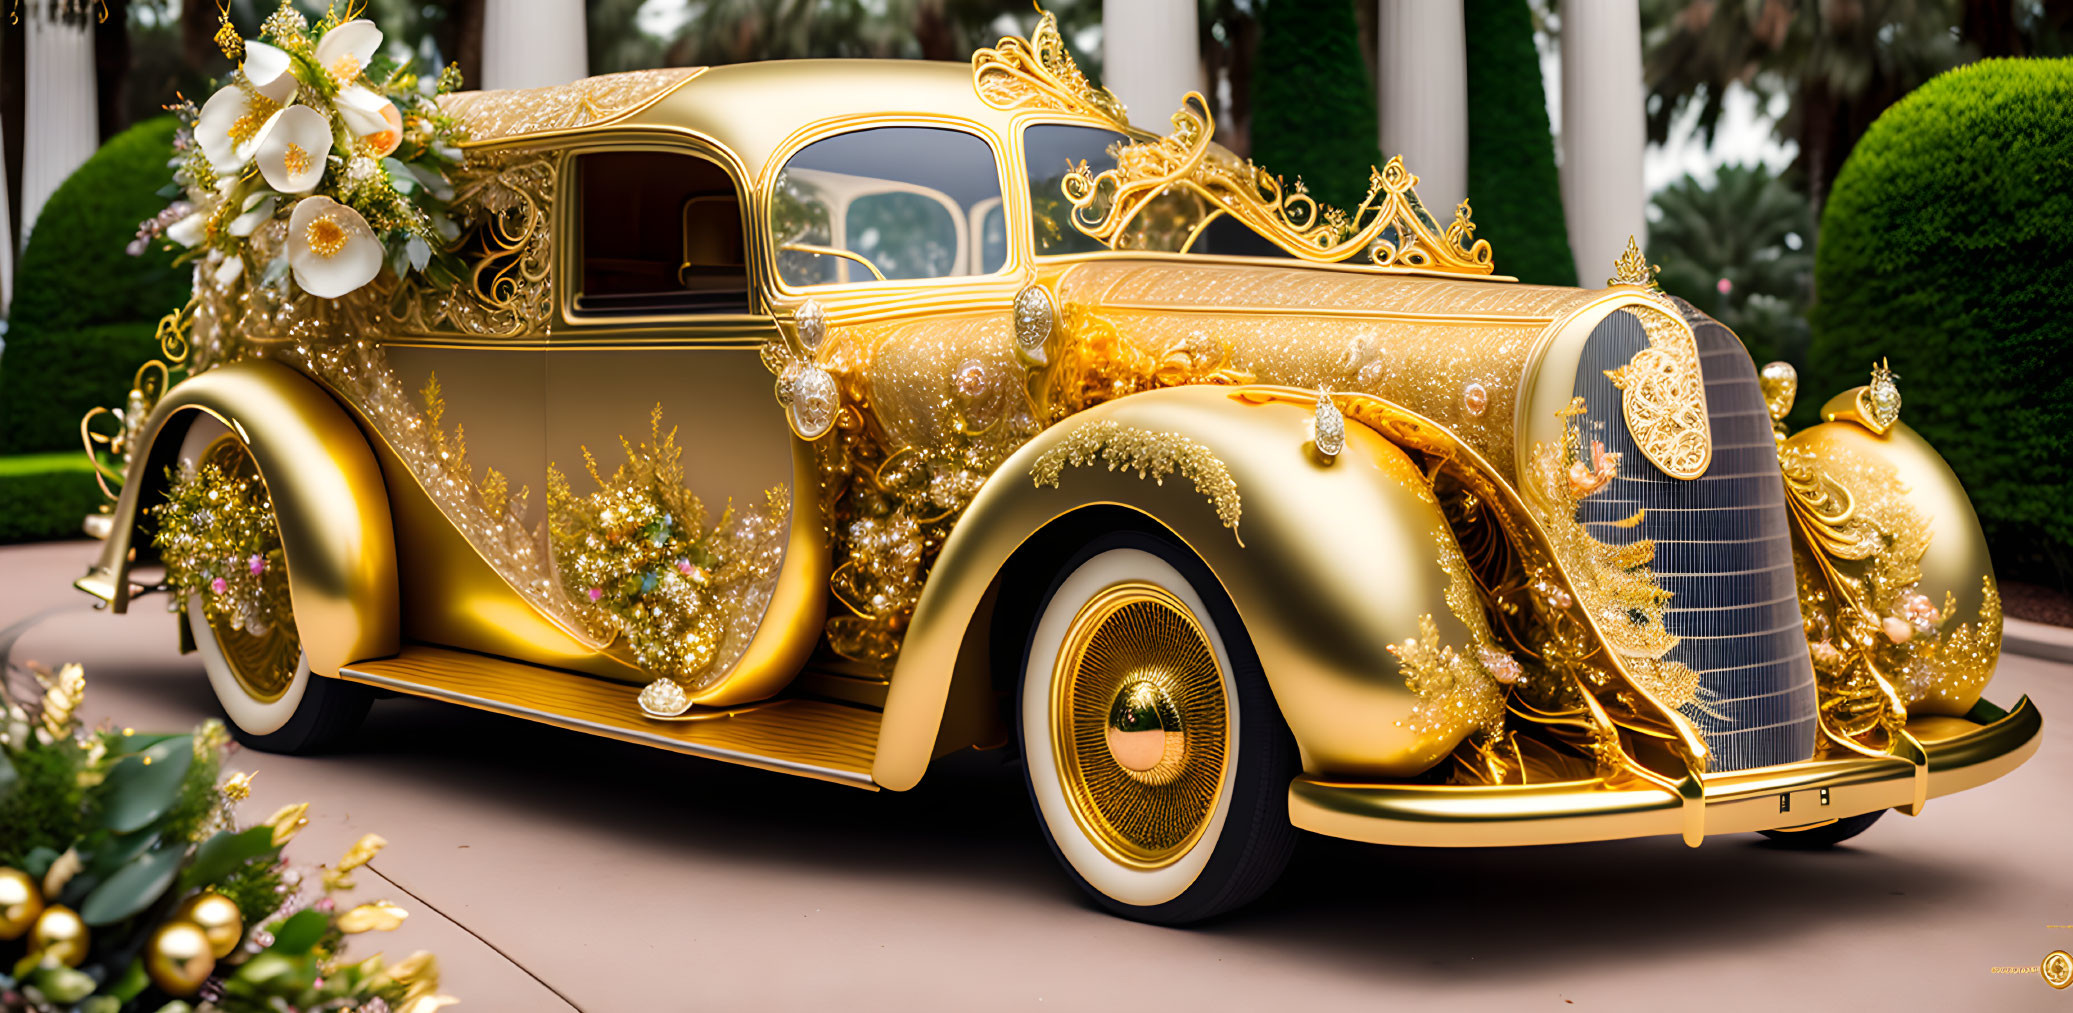 Vintage Golden Car